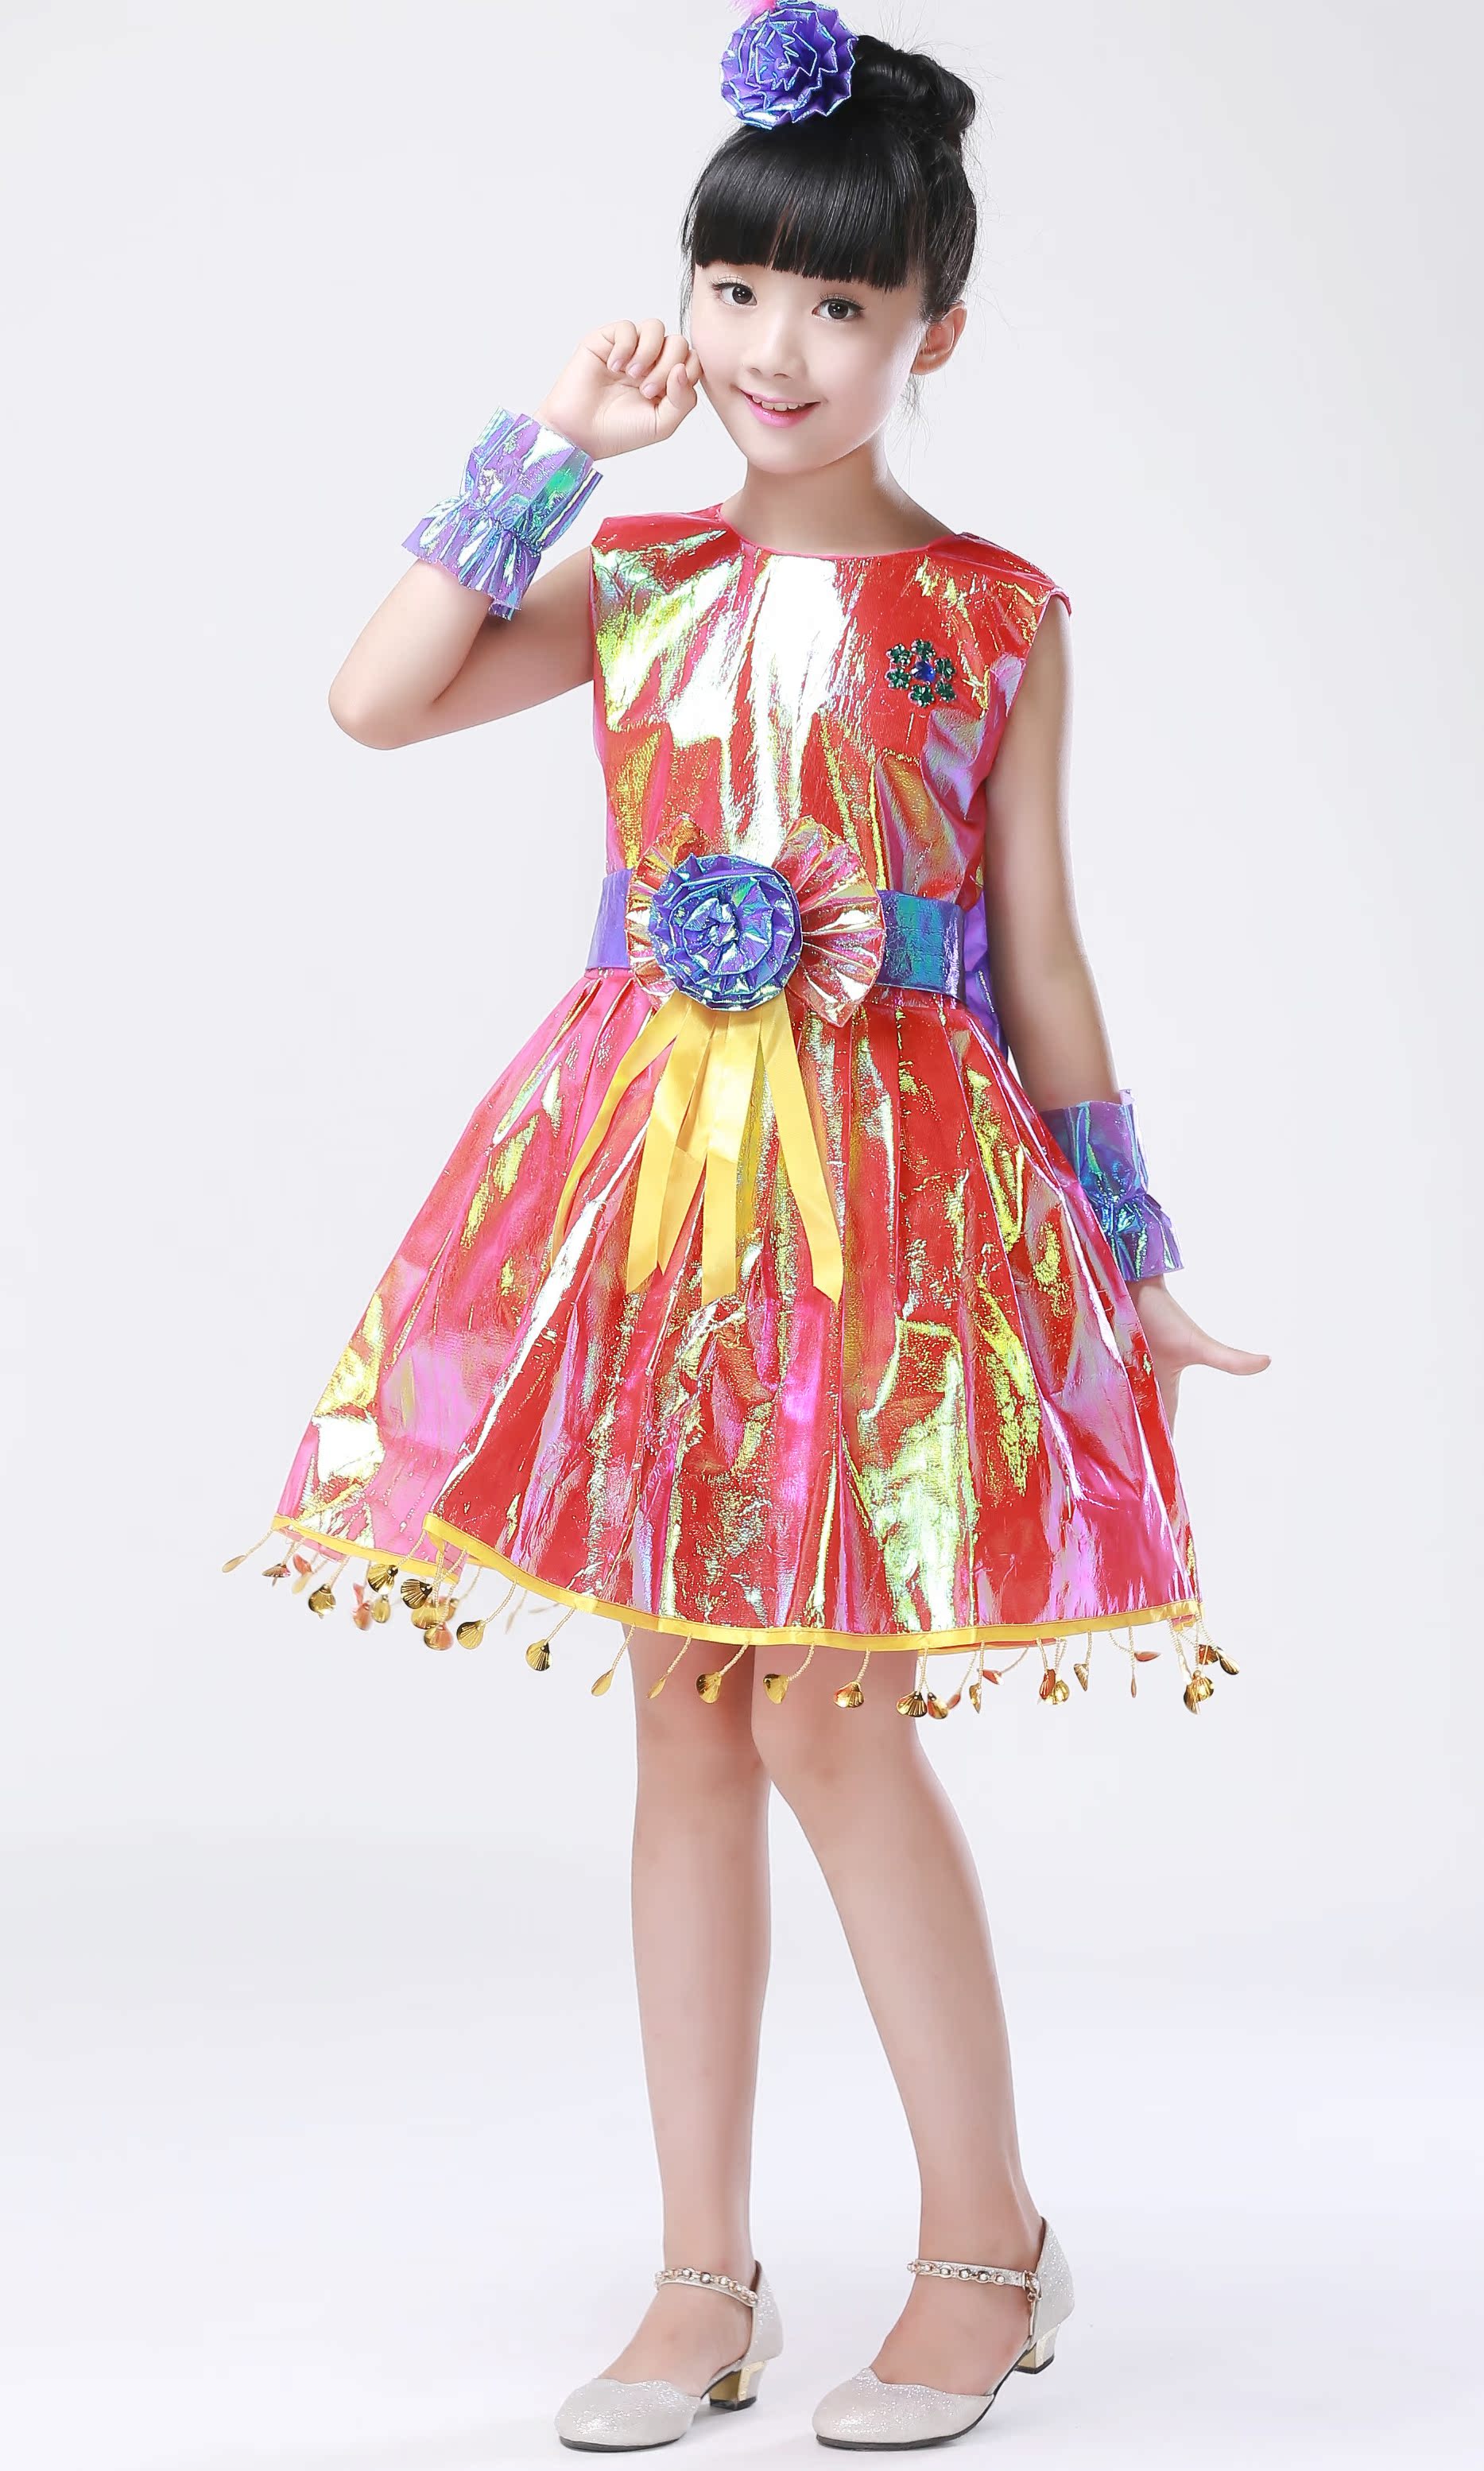 六一儿童节环保服装演出服儿童时装秀手工材料制作环保衣服公主裙